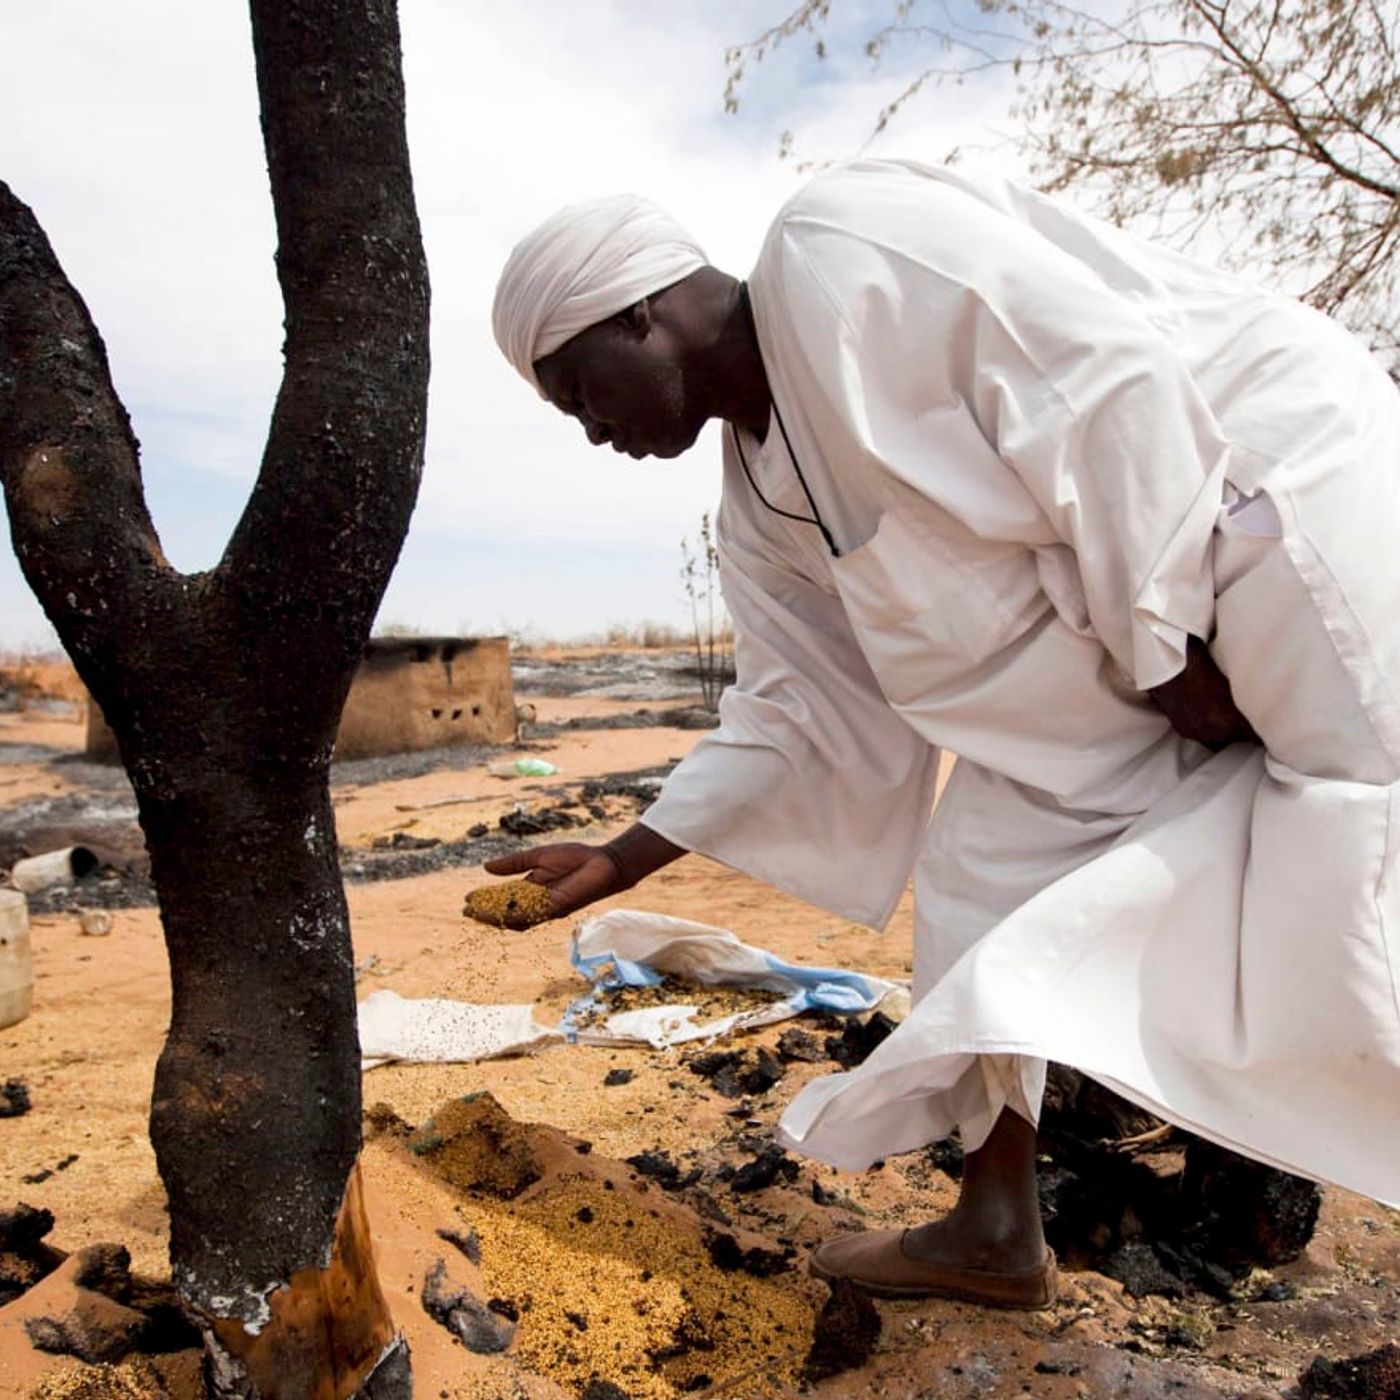 La pulizia etnica in Darfur davanti a governi immobili